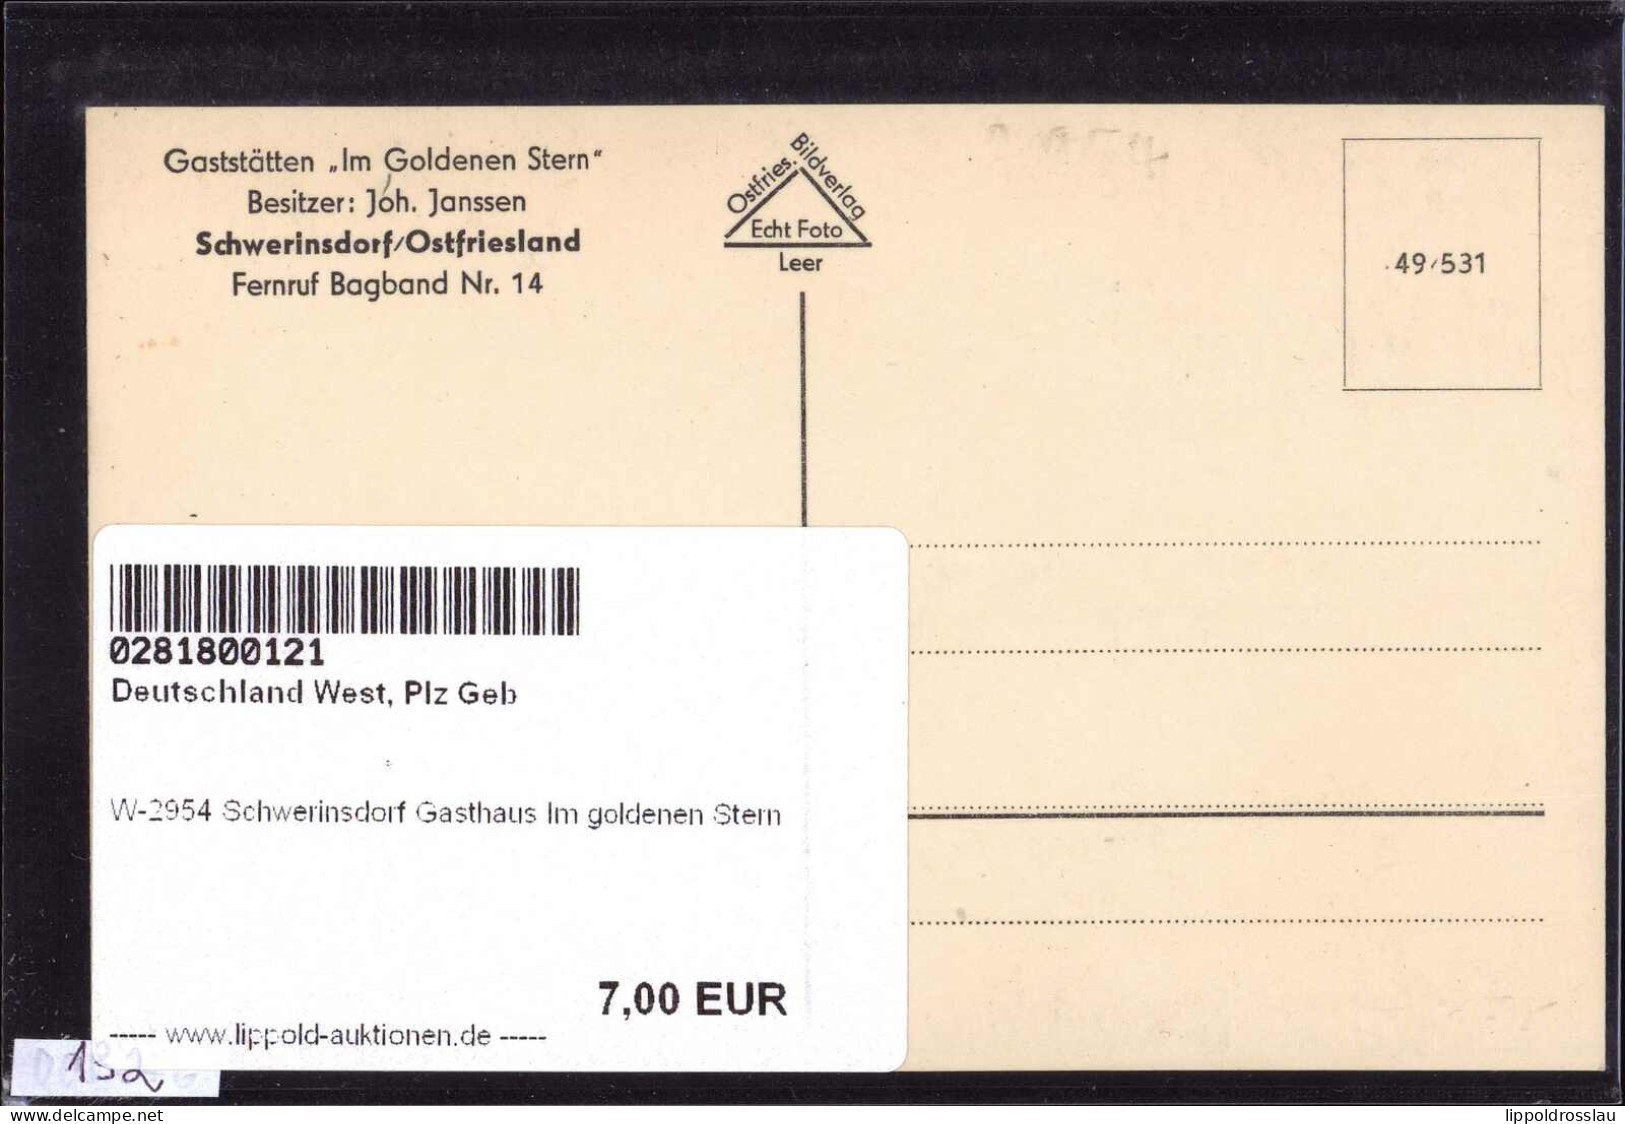 * W-2954 Schwerinsdorf Gasthaus Im Goldenen Stern - Leer